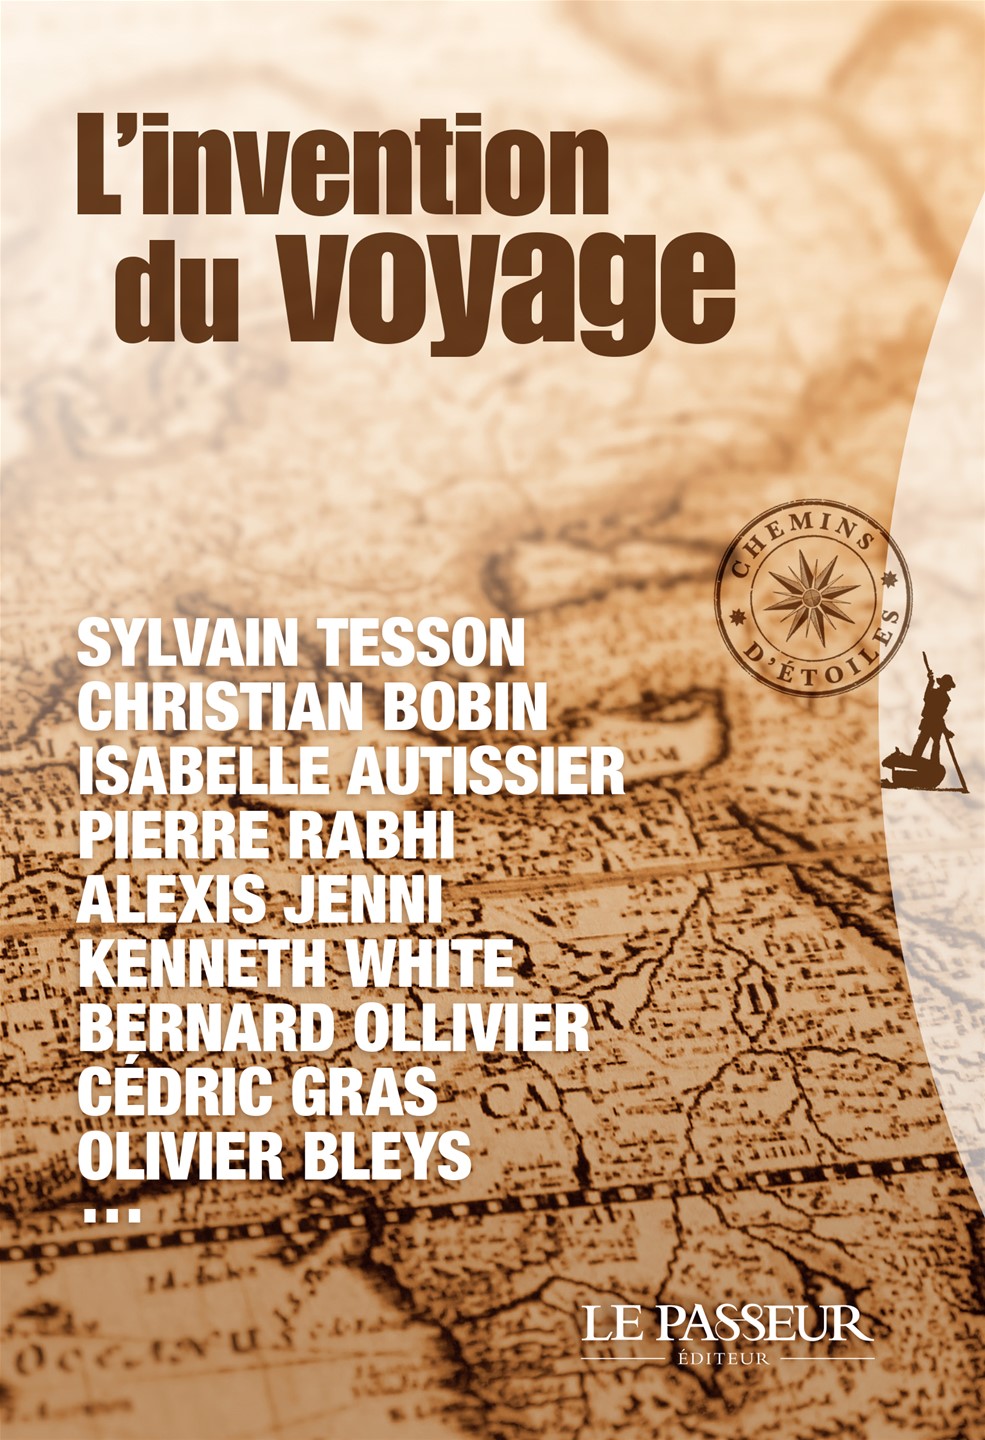 1ère de couverture de l'ouvrage "L'invention du voyage".